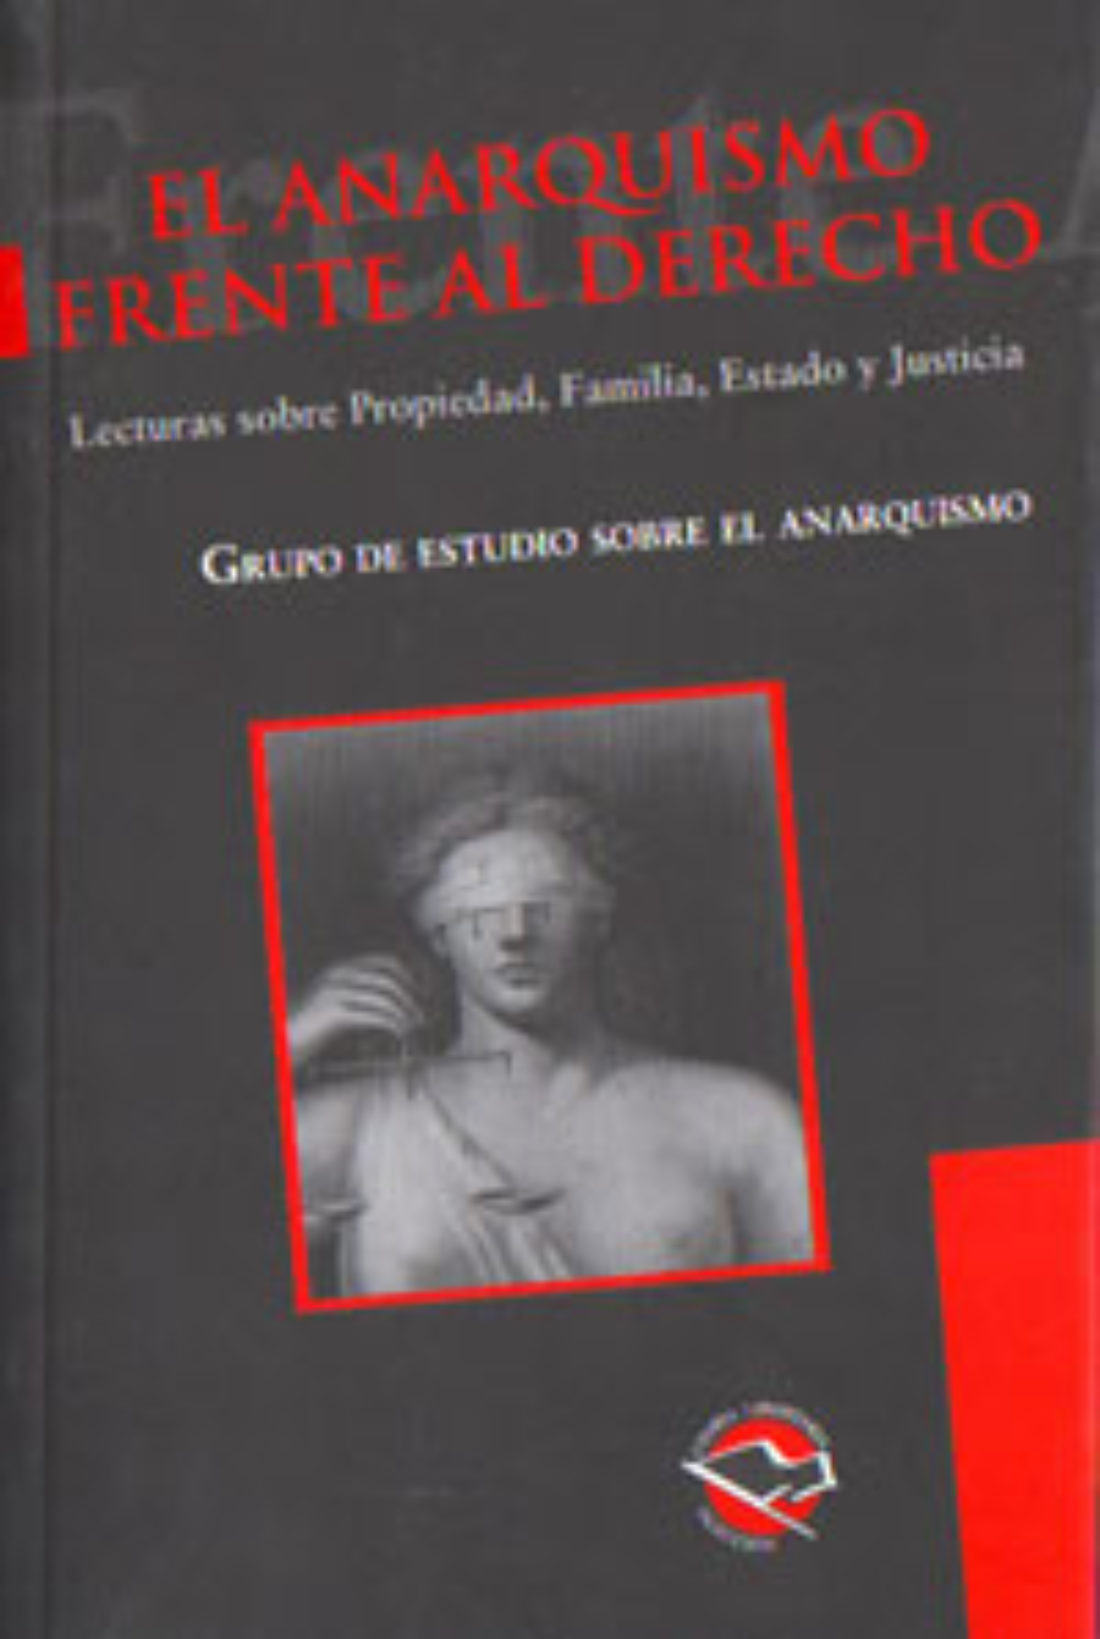 Madrid. Martes 15 de abril de 2008. 19:30h. Presentación del libro «El anarquismo frente al derecho.» Lecturas sobre Propiedad, Familia, Estado y Justicia.